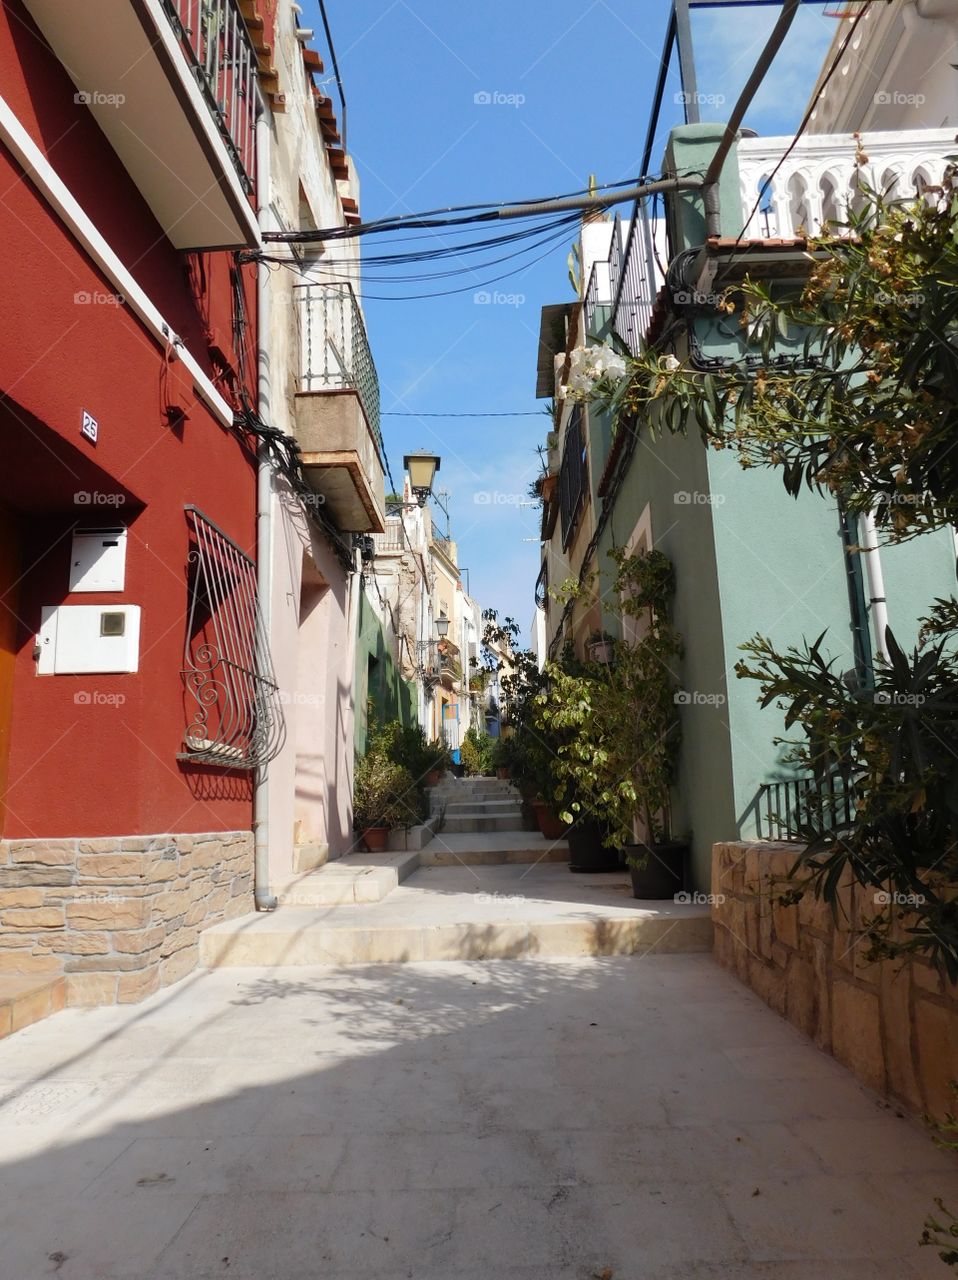 Ruelle avec les maisons colorés en Espagne 